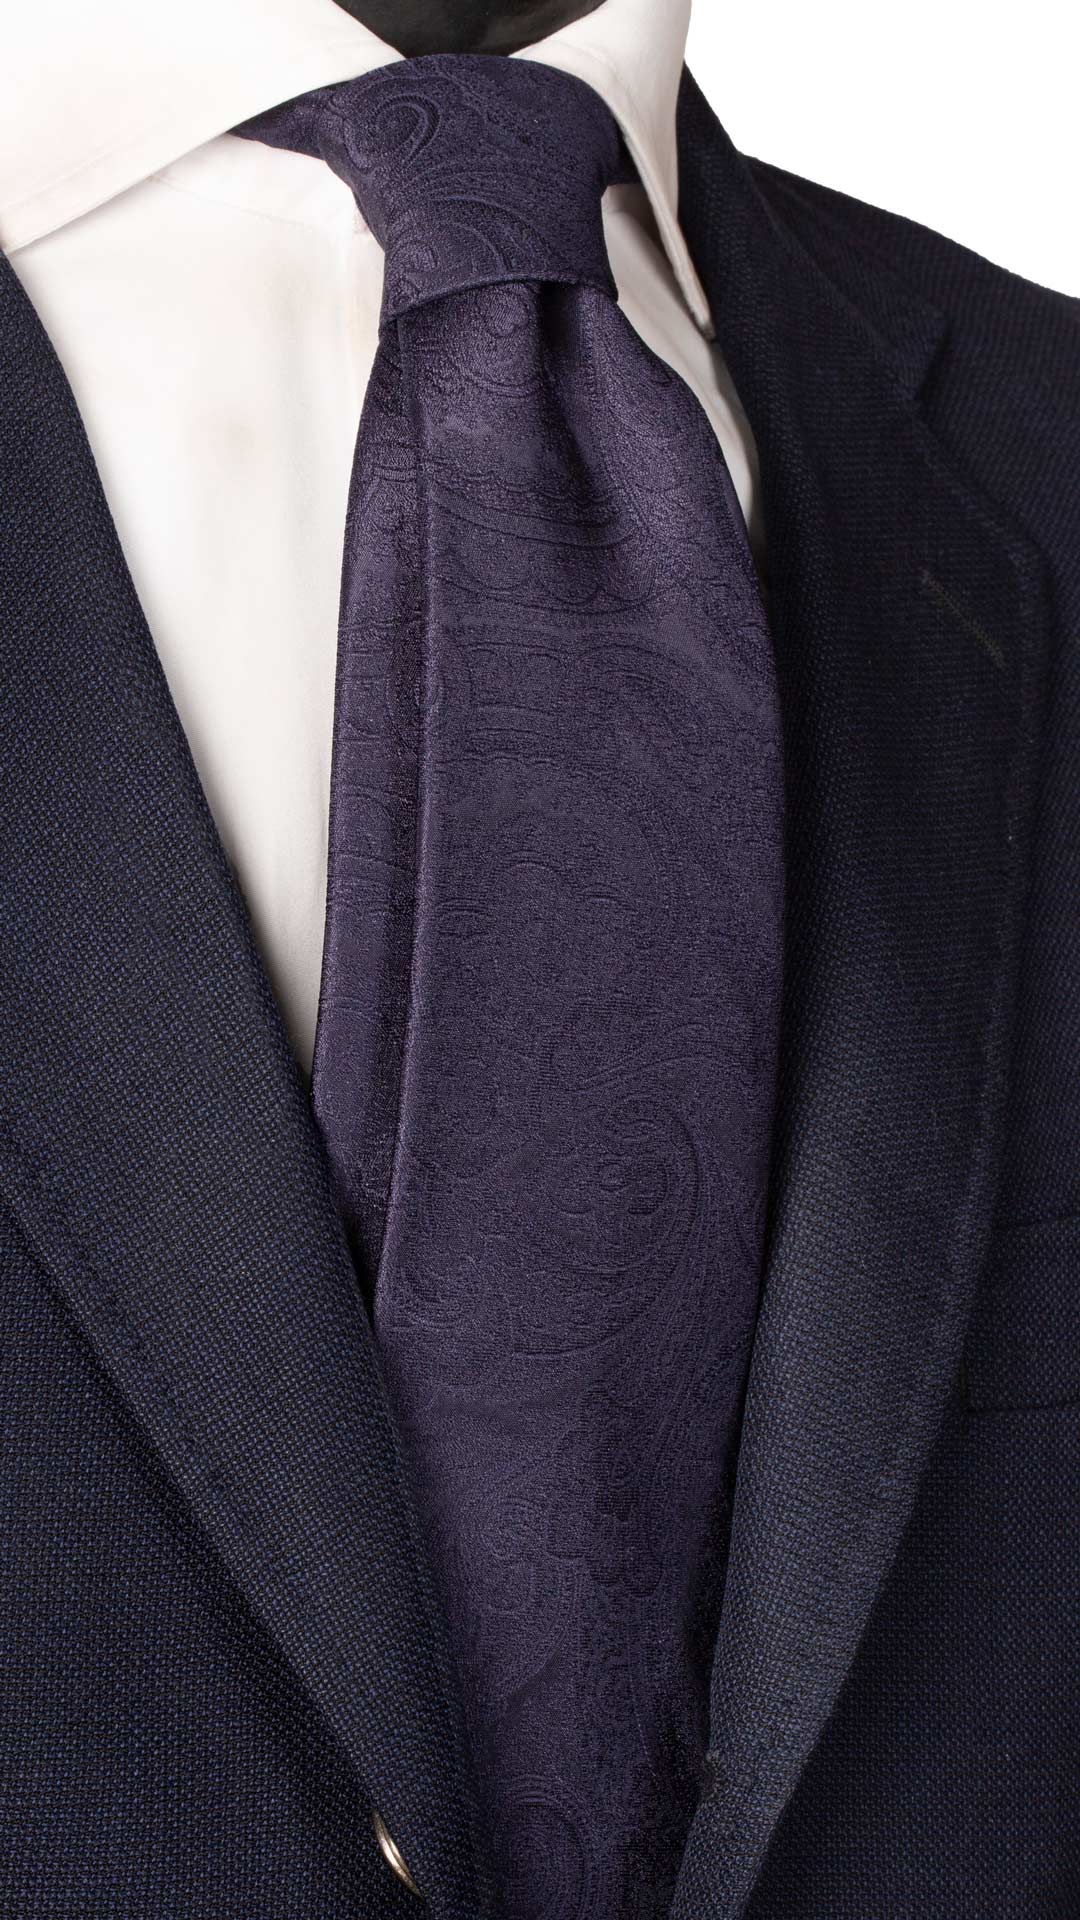 Cravatta da Cerimonia di Seta Blu Paisley Tono su Tono Made in Italy Graffeo Cravatte